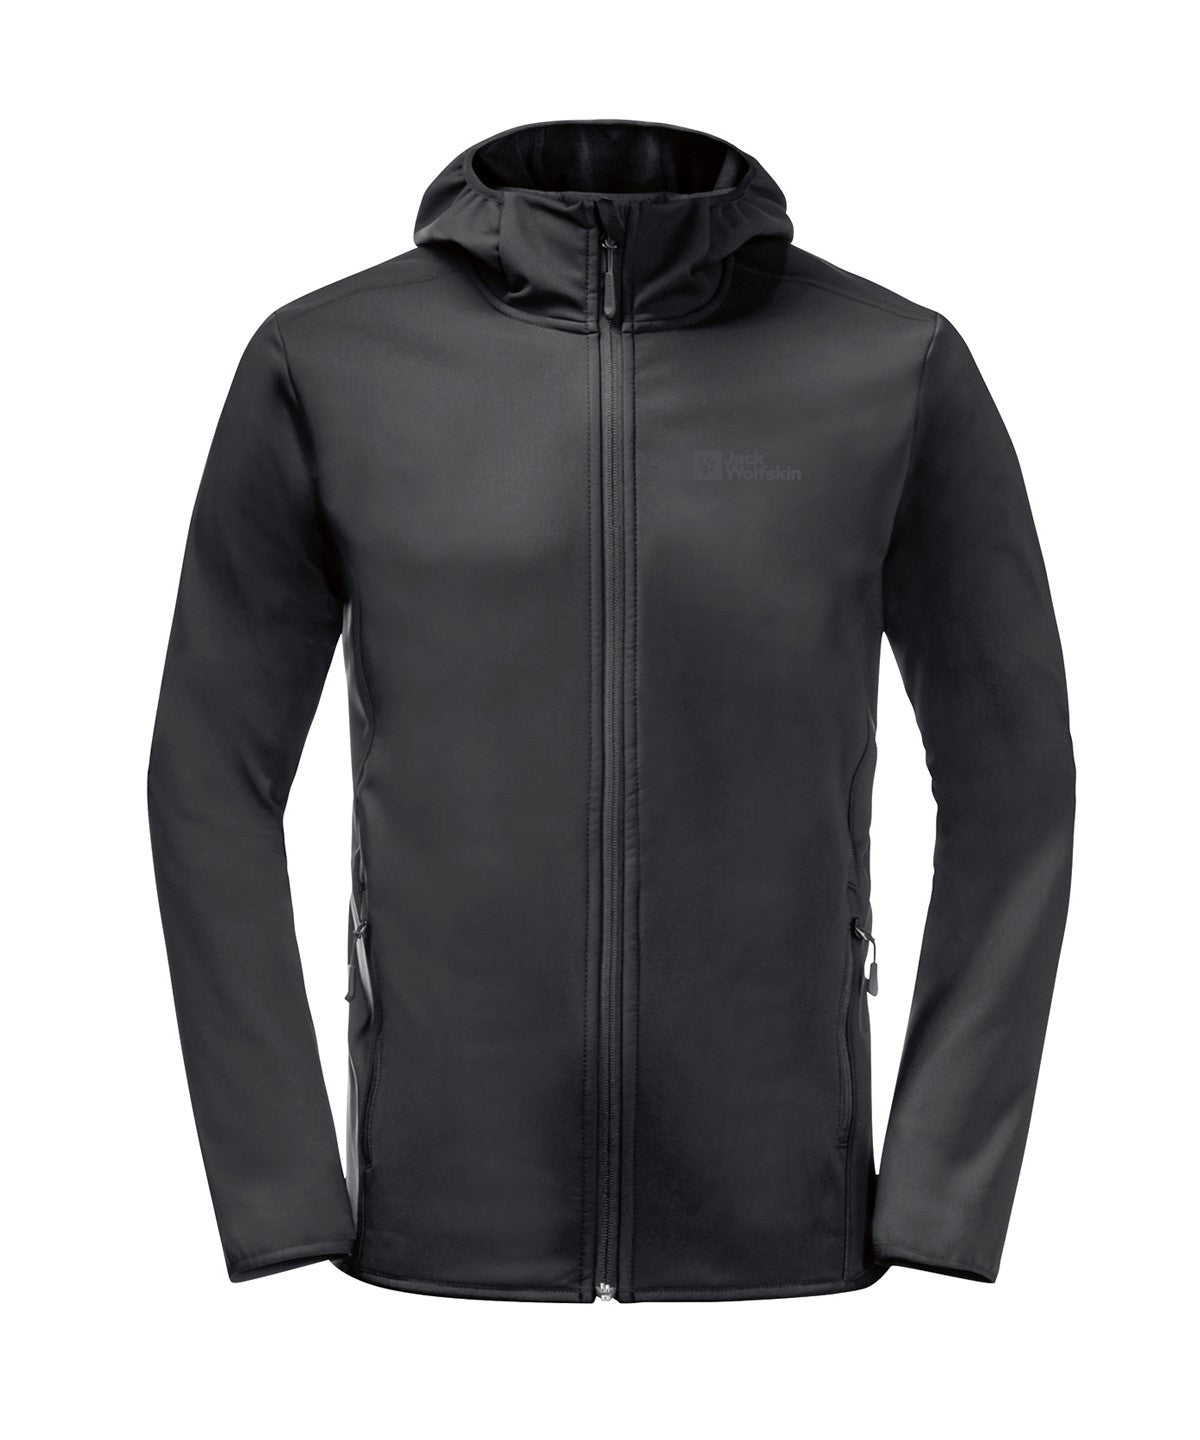 Personalised Jackets - Black Jack Wolfskin Hooded softshell jacket (NL)